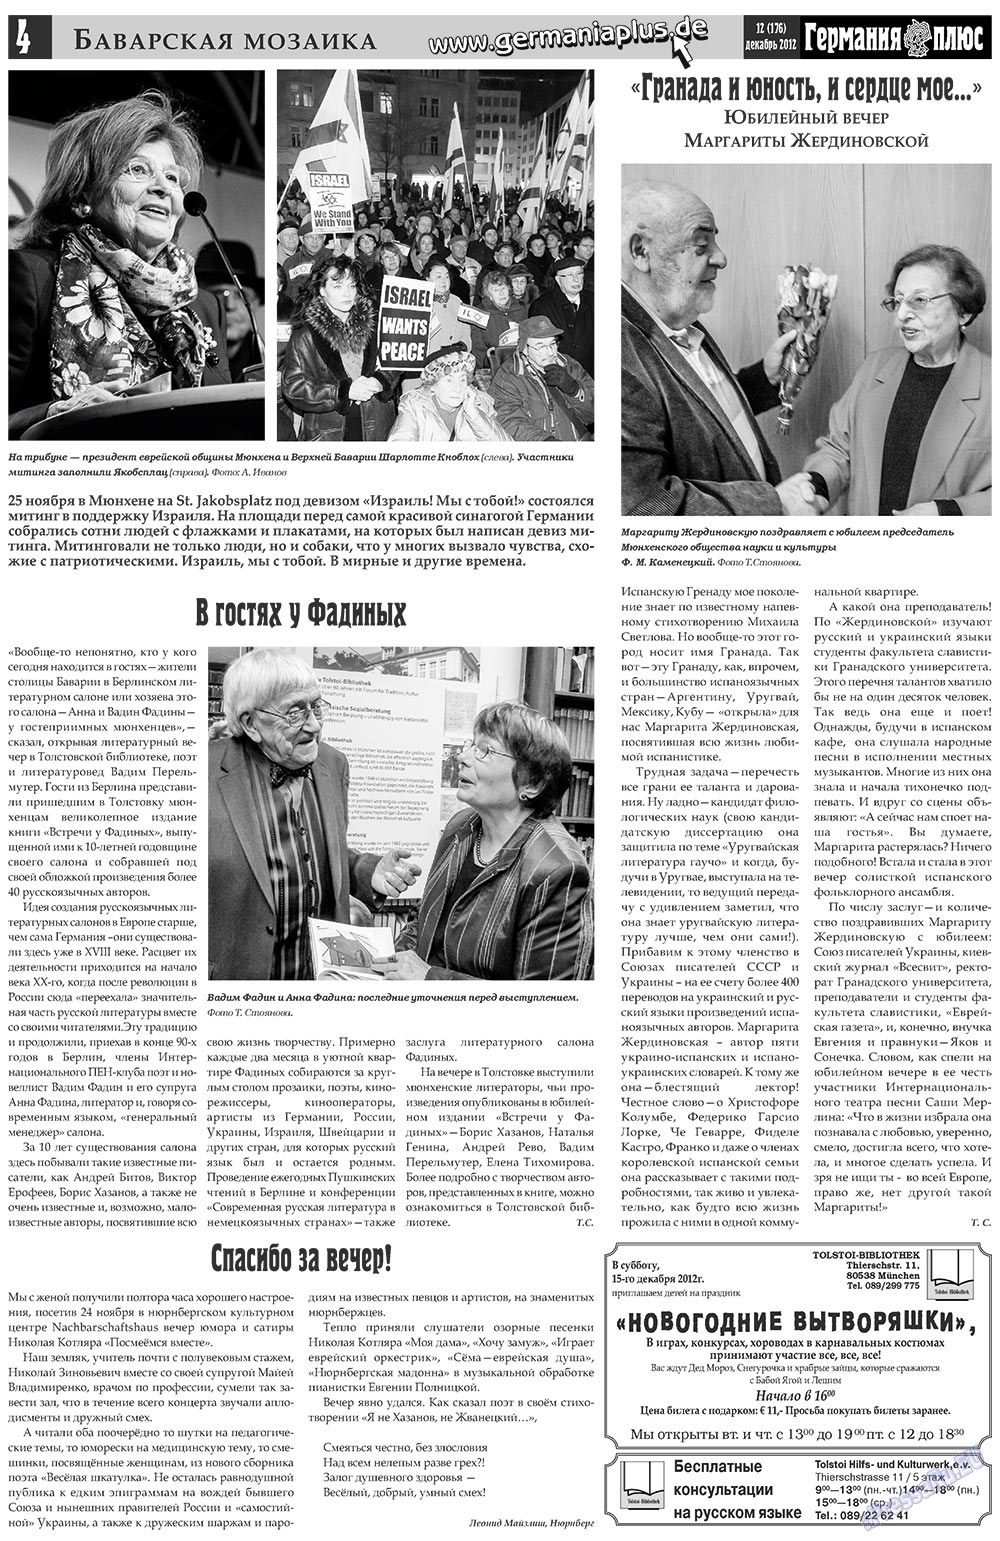 Германия плюс, газета. 2012 №12 стр.4